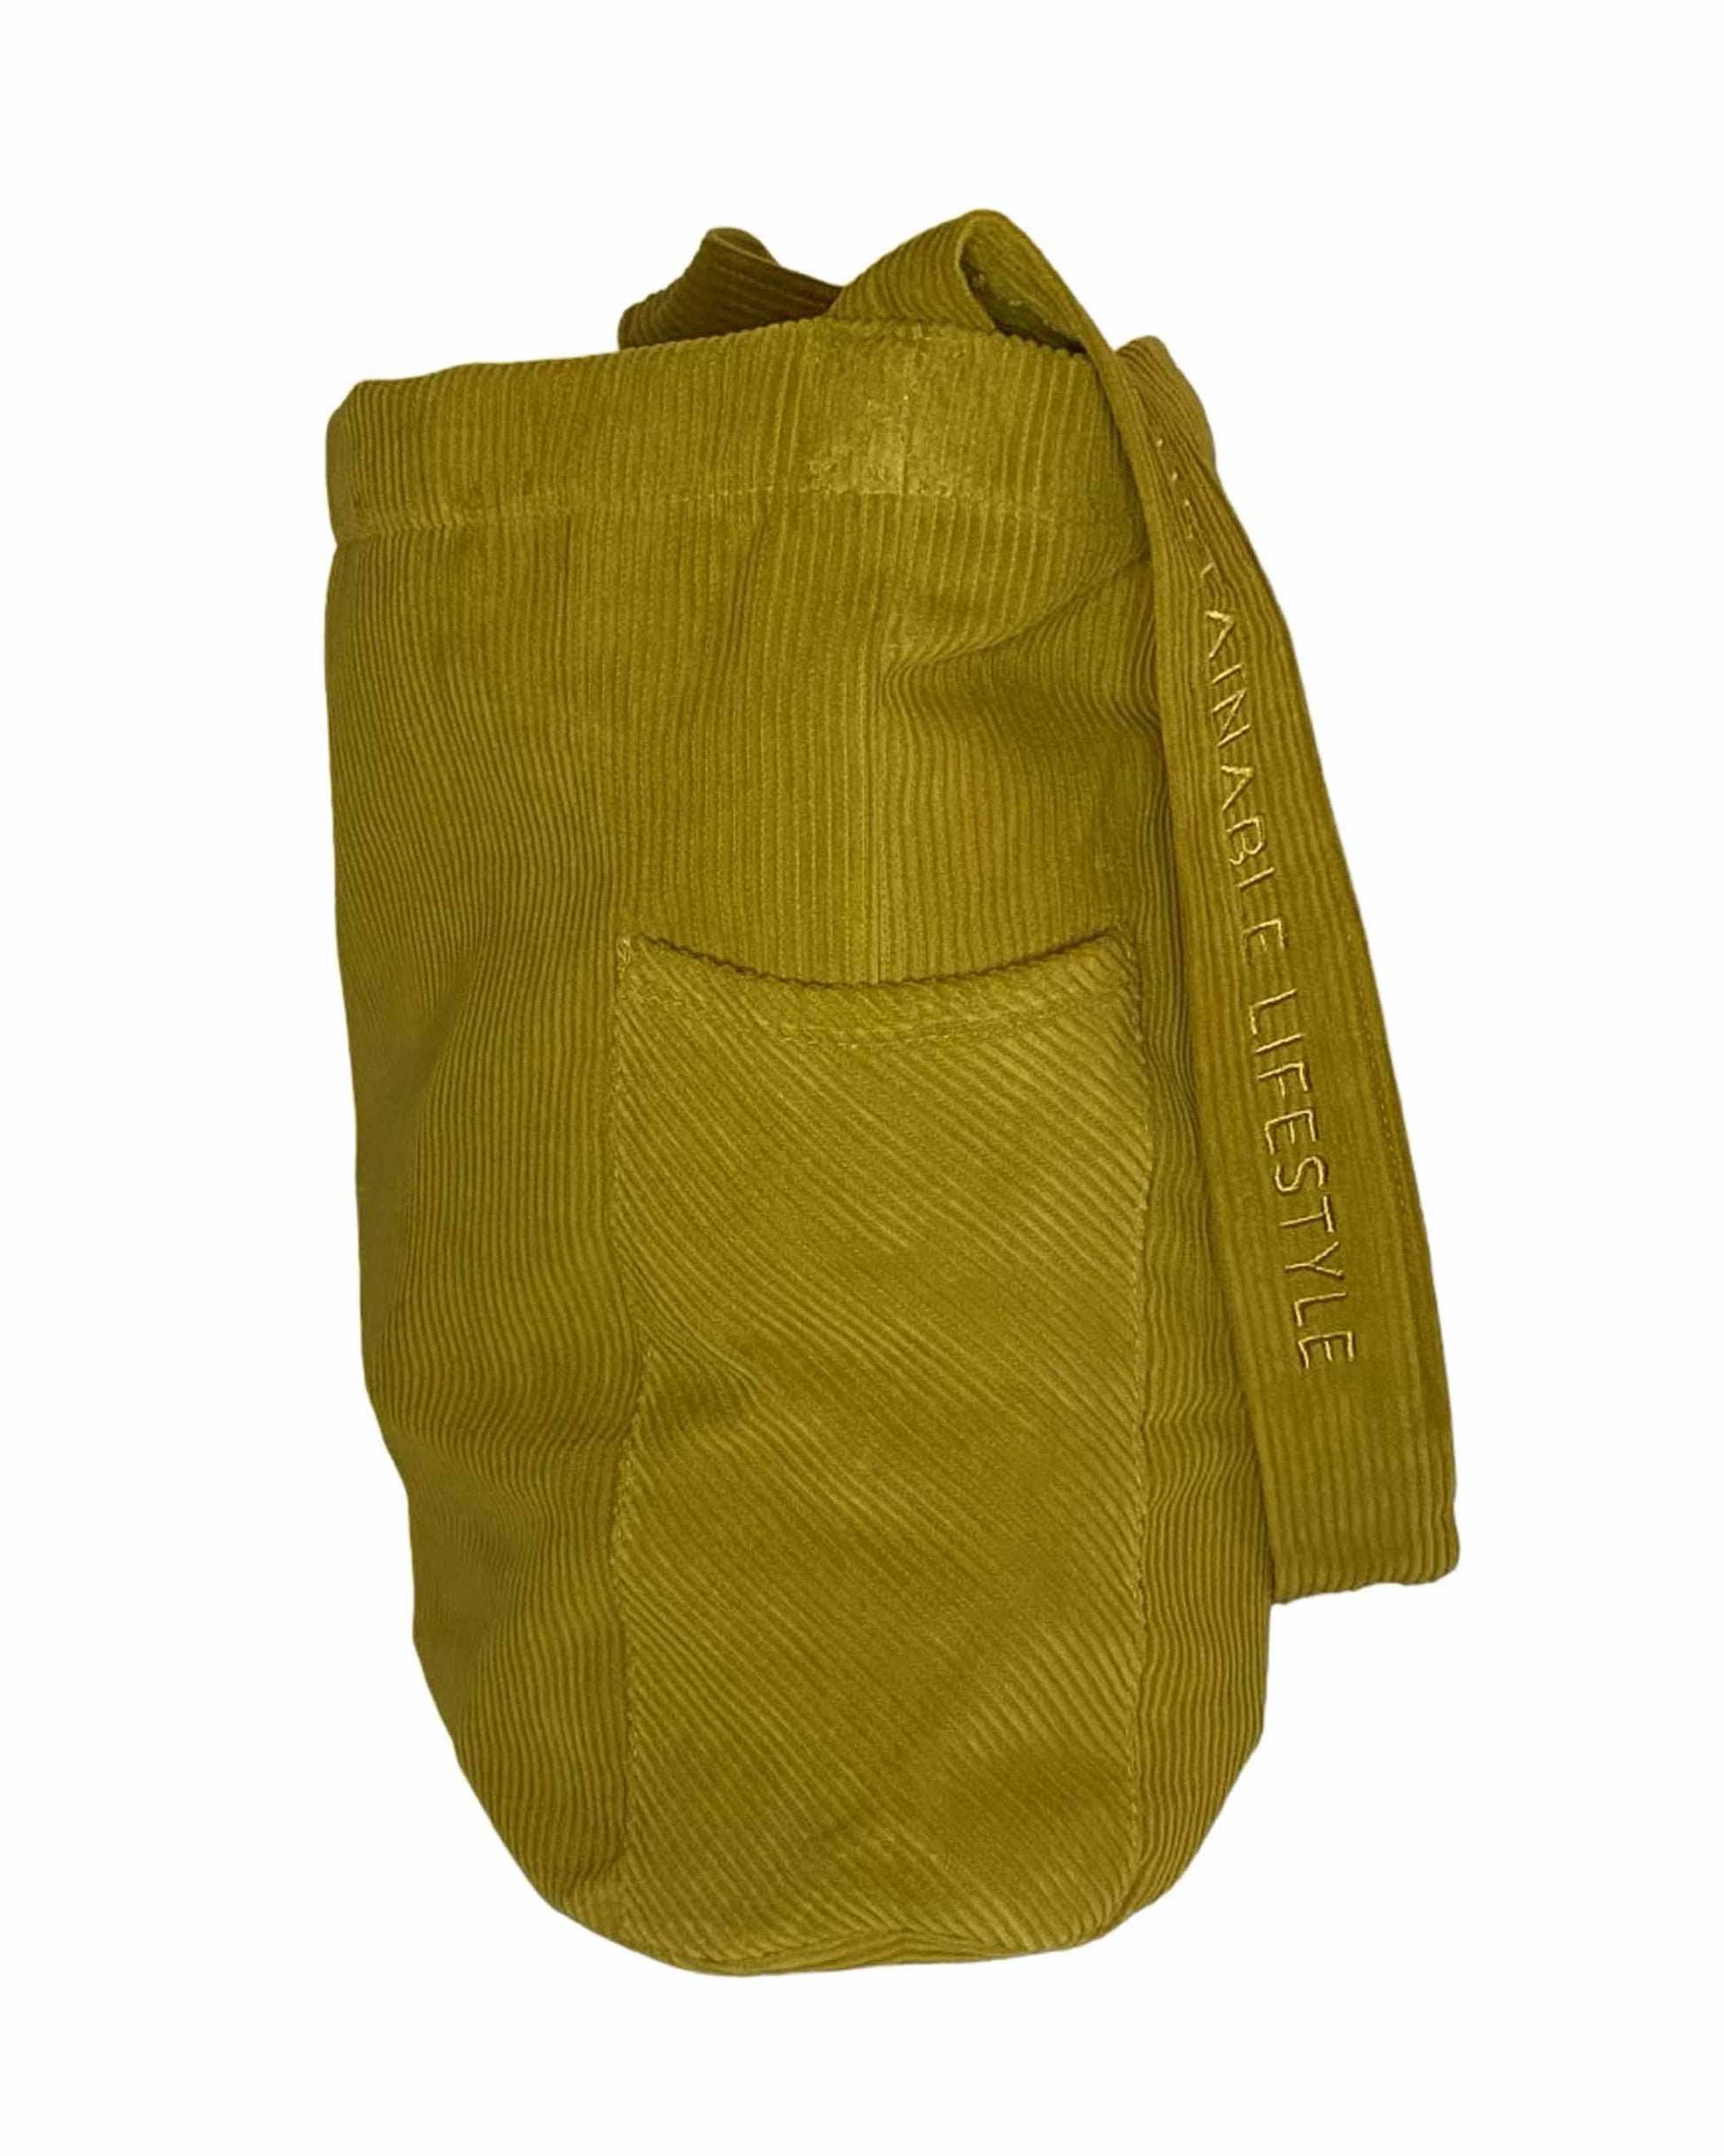 olivenfarvet cordfløjlstaske fra siden med lomme